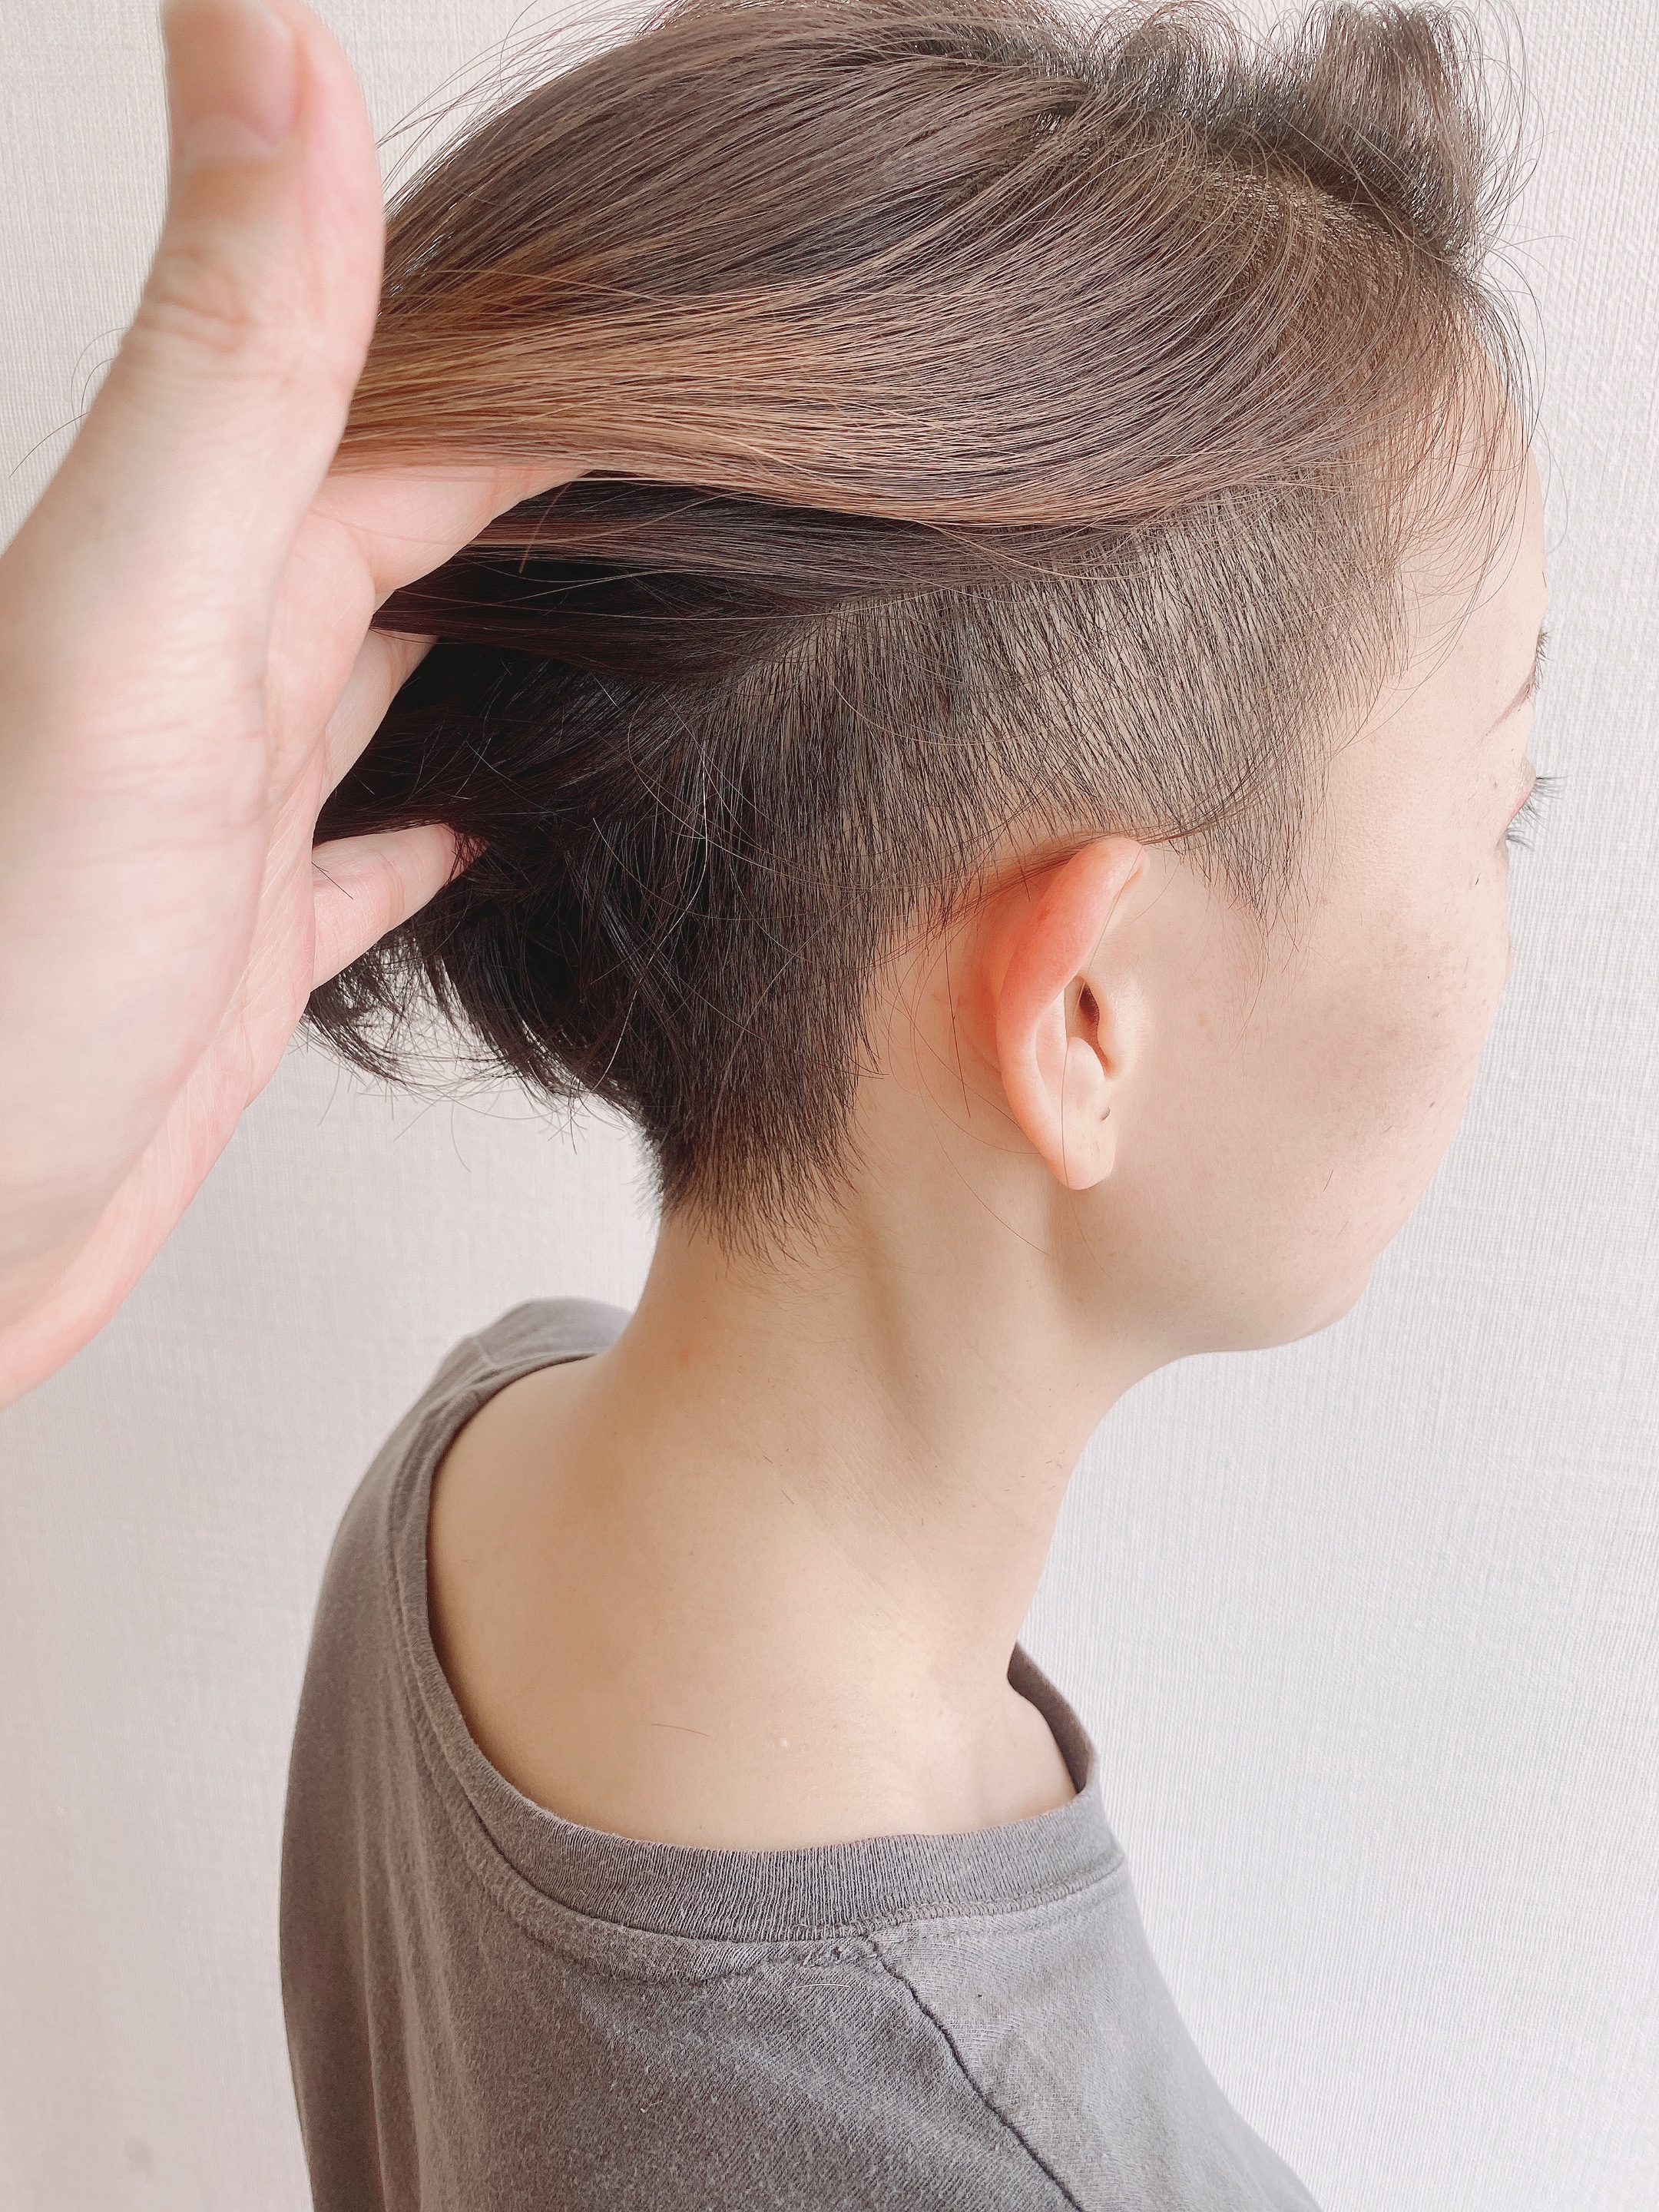 女性でも らしさ を求めて欲しい 夏木マリさんの刈り上げヘア風にツーブロックボブが可愛い 総社市 美容室ルチア 30代 40代 50代 の髪の悩み解消